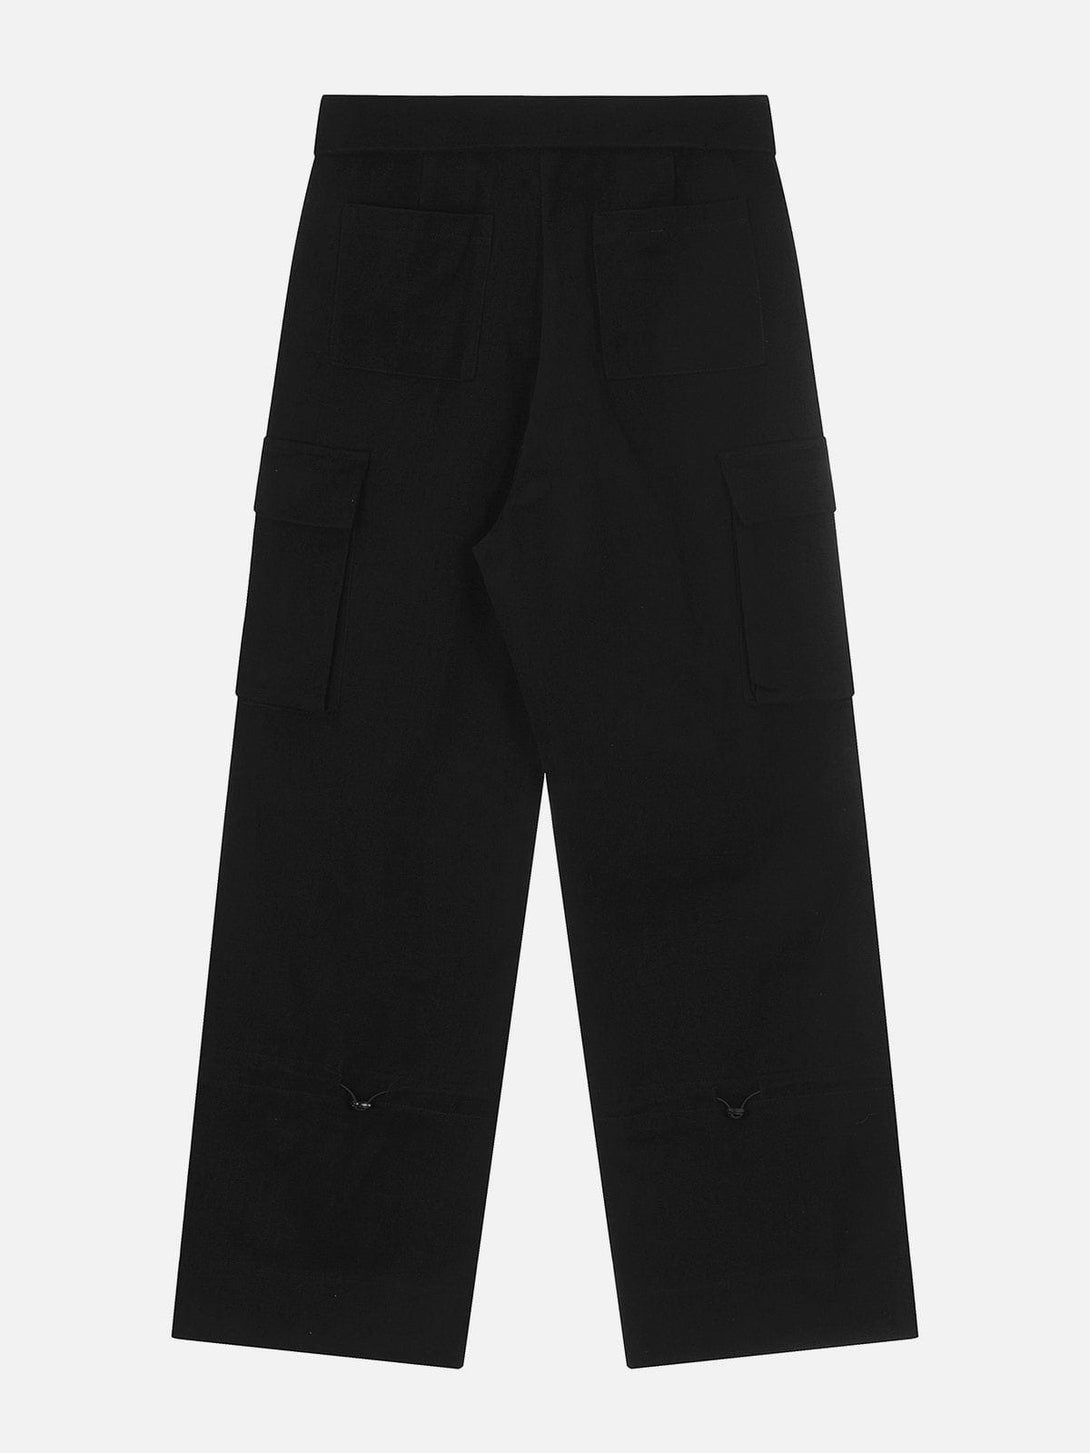 AlanBalen® - Zipper Pocket Cargo Pants AlanBalen